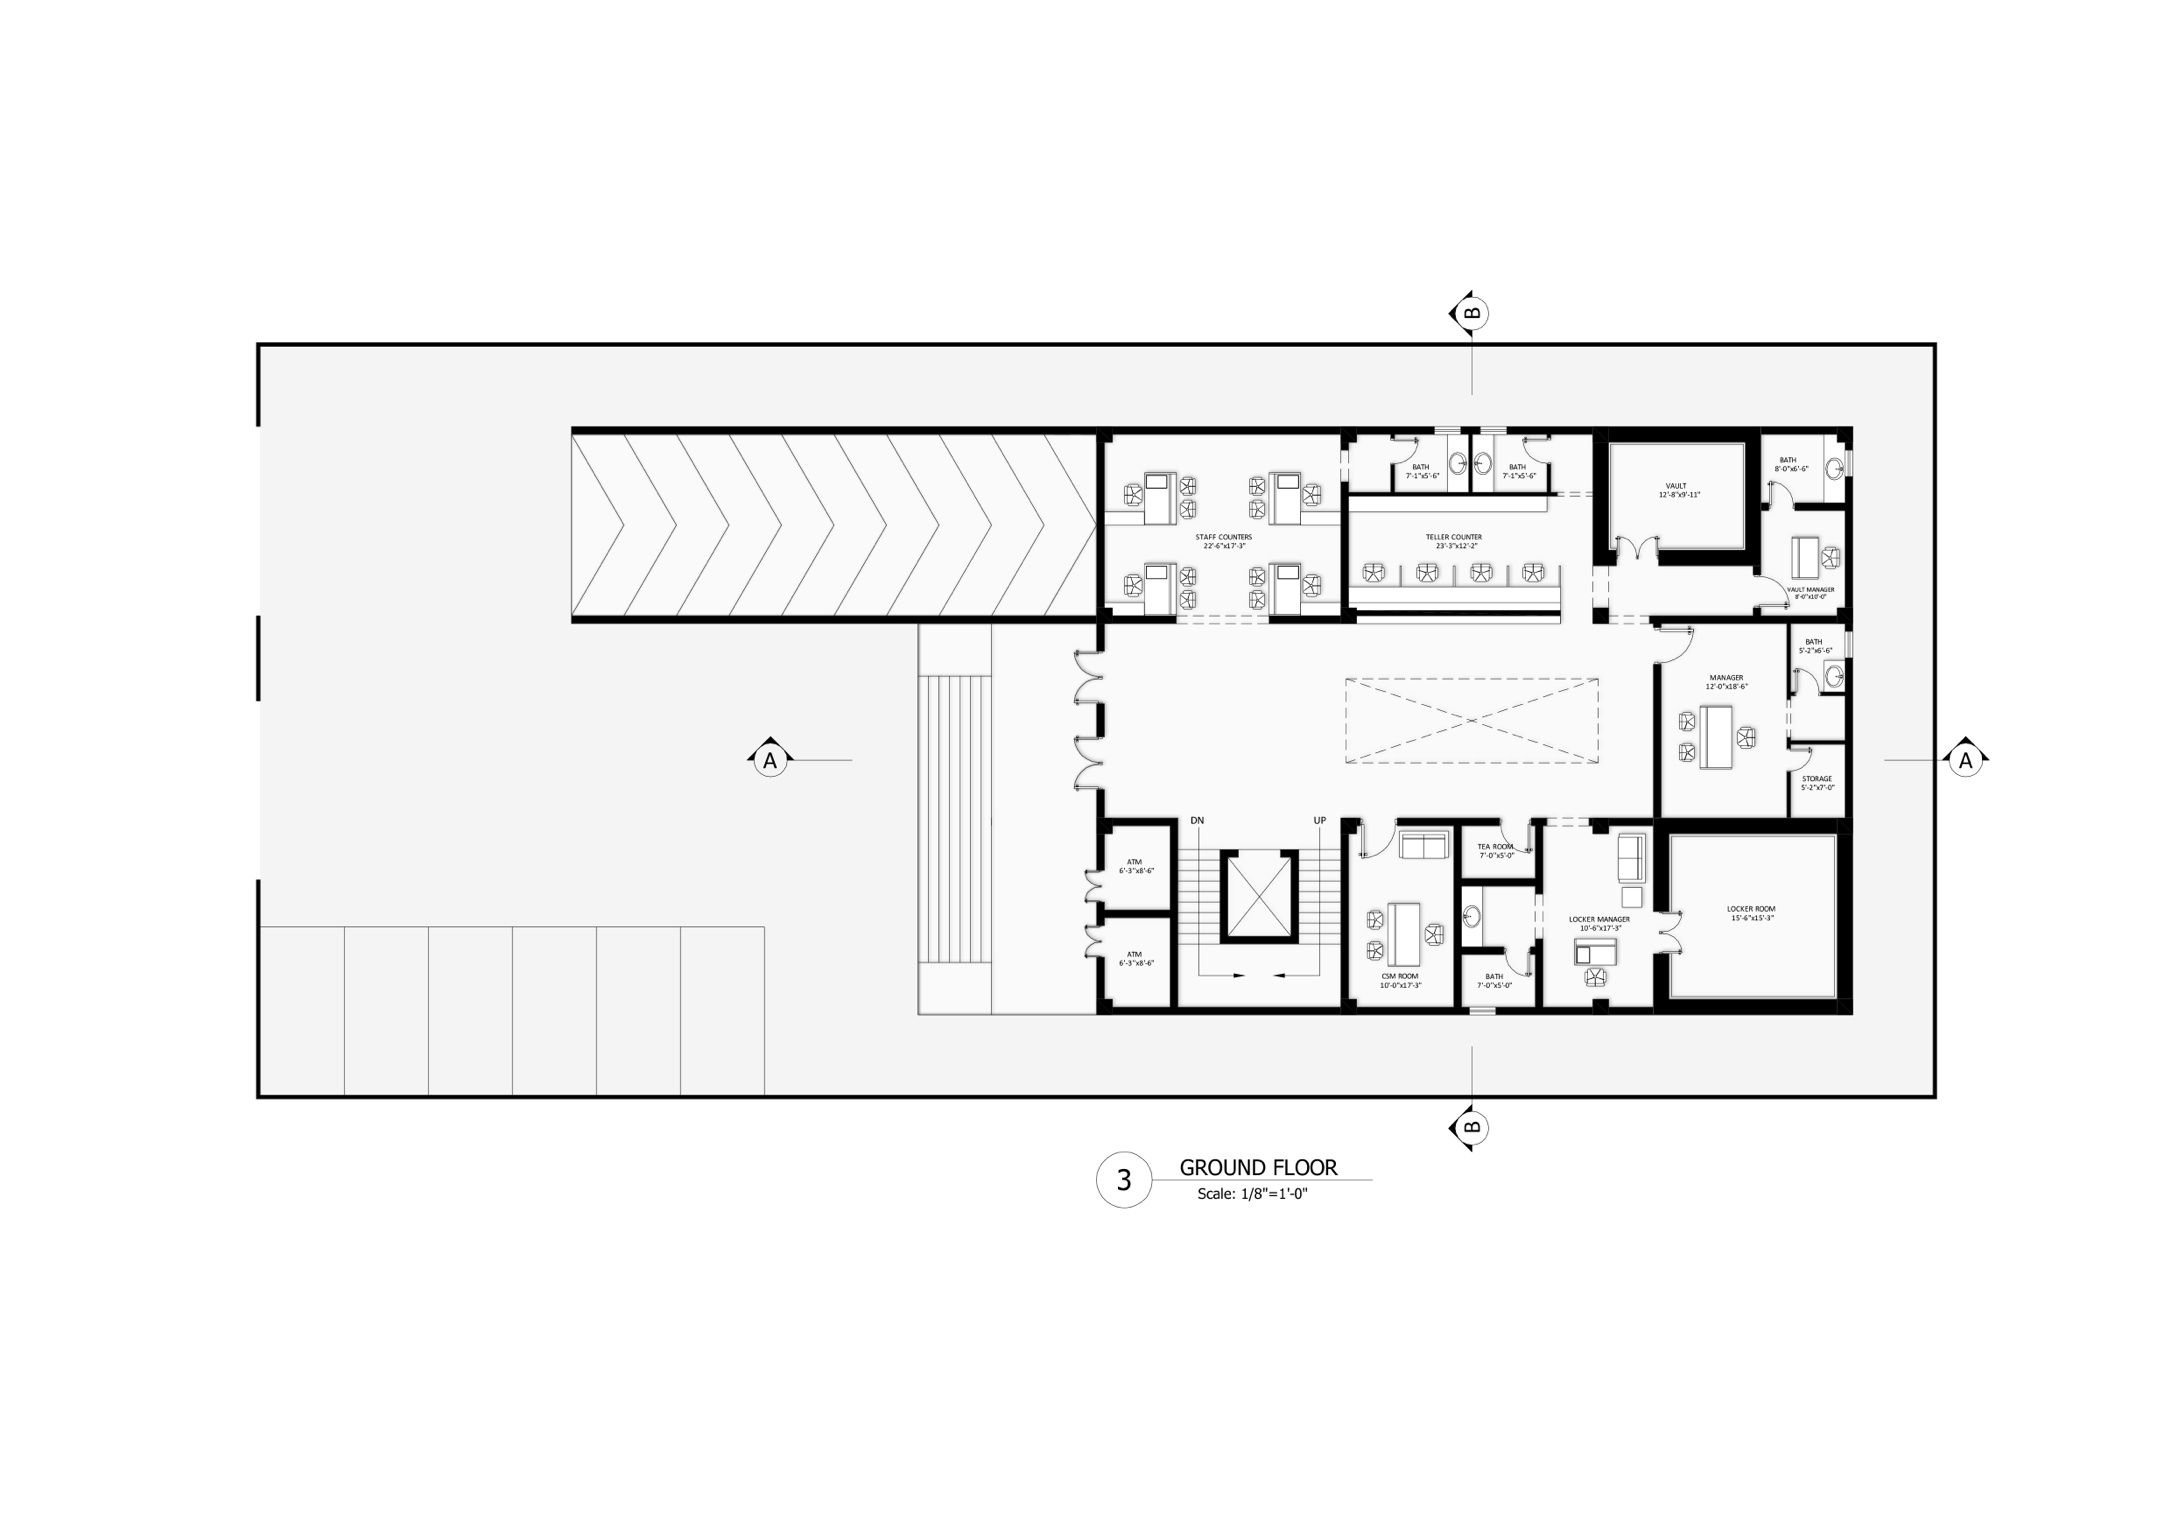 Bank Design Ground Floor Plan Architectural Design 2